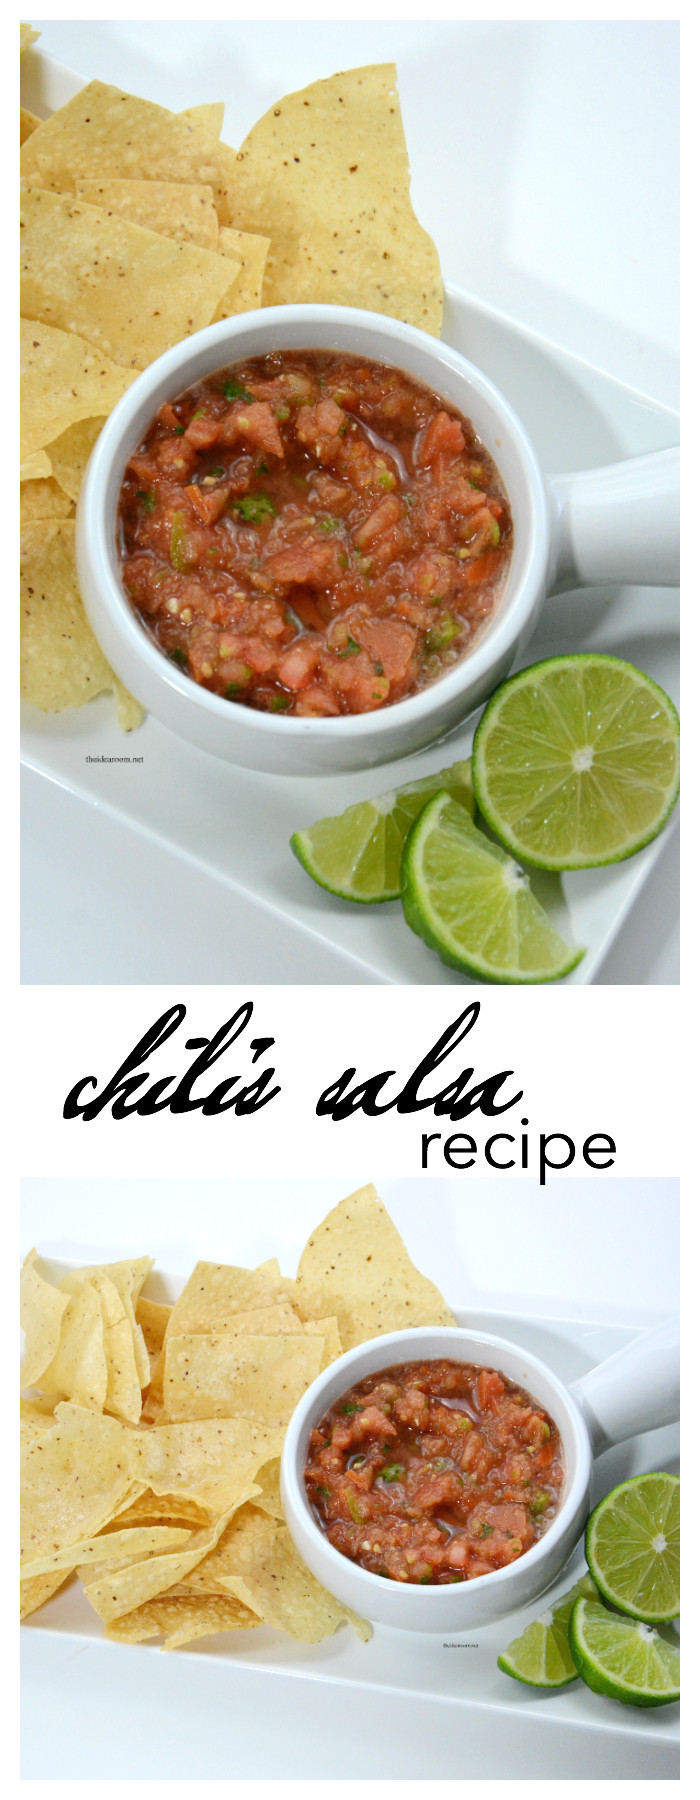 Recipe For Chilis Salsa
 Copycat Chili s Salsa Recipe The Idea Room